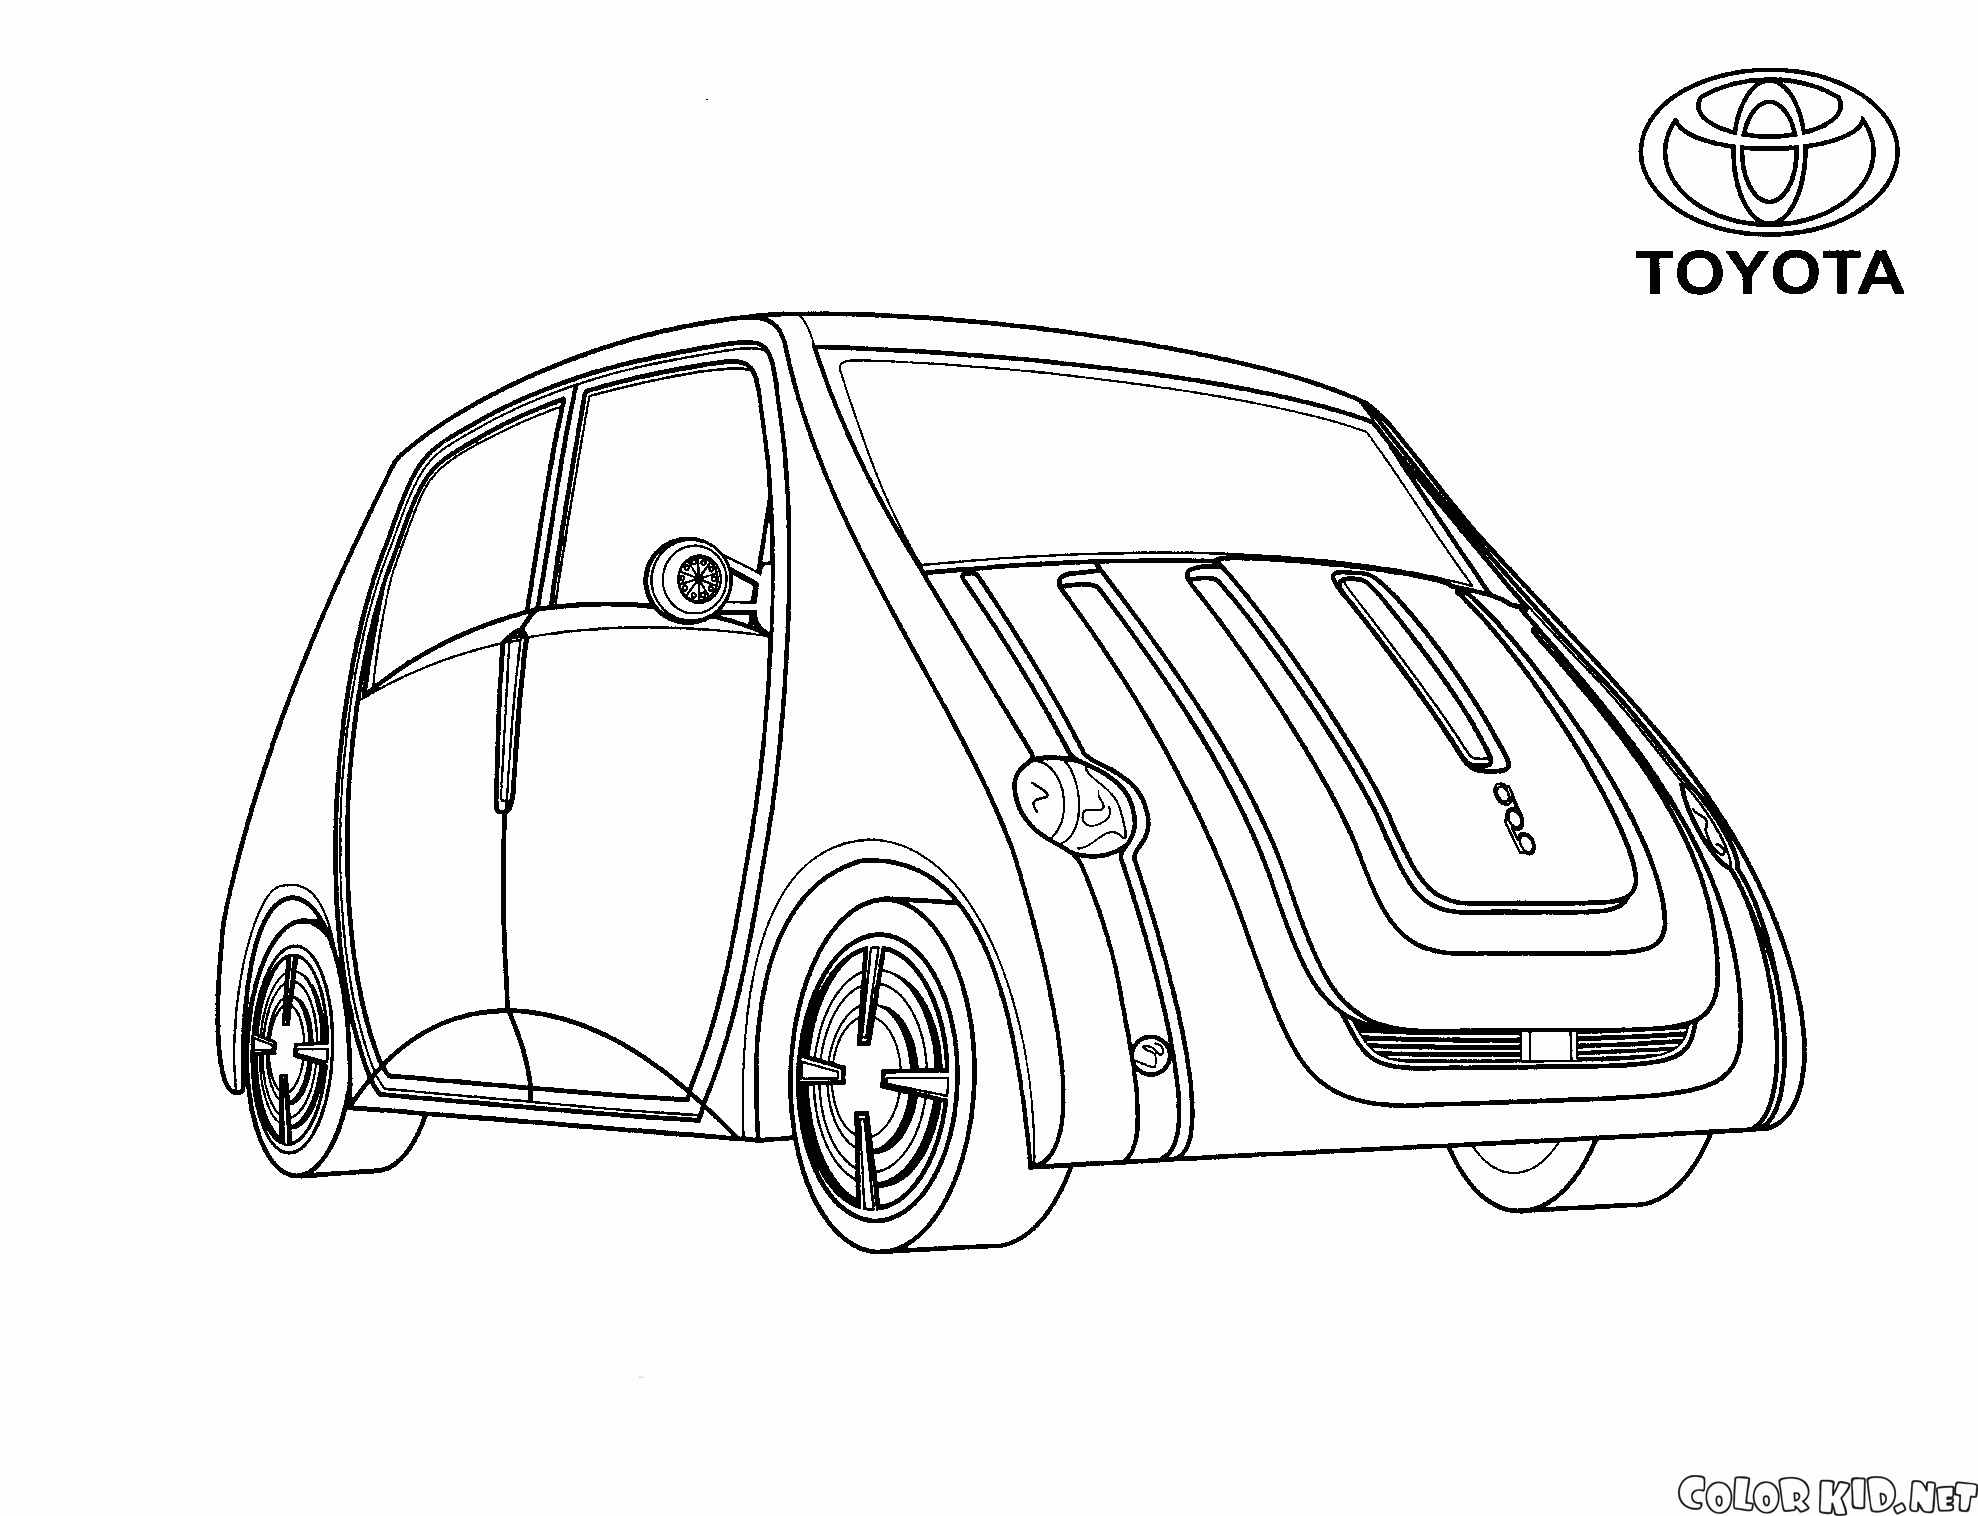 Japanese mini-van